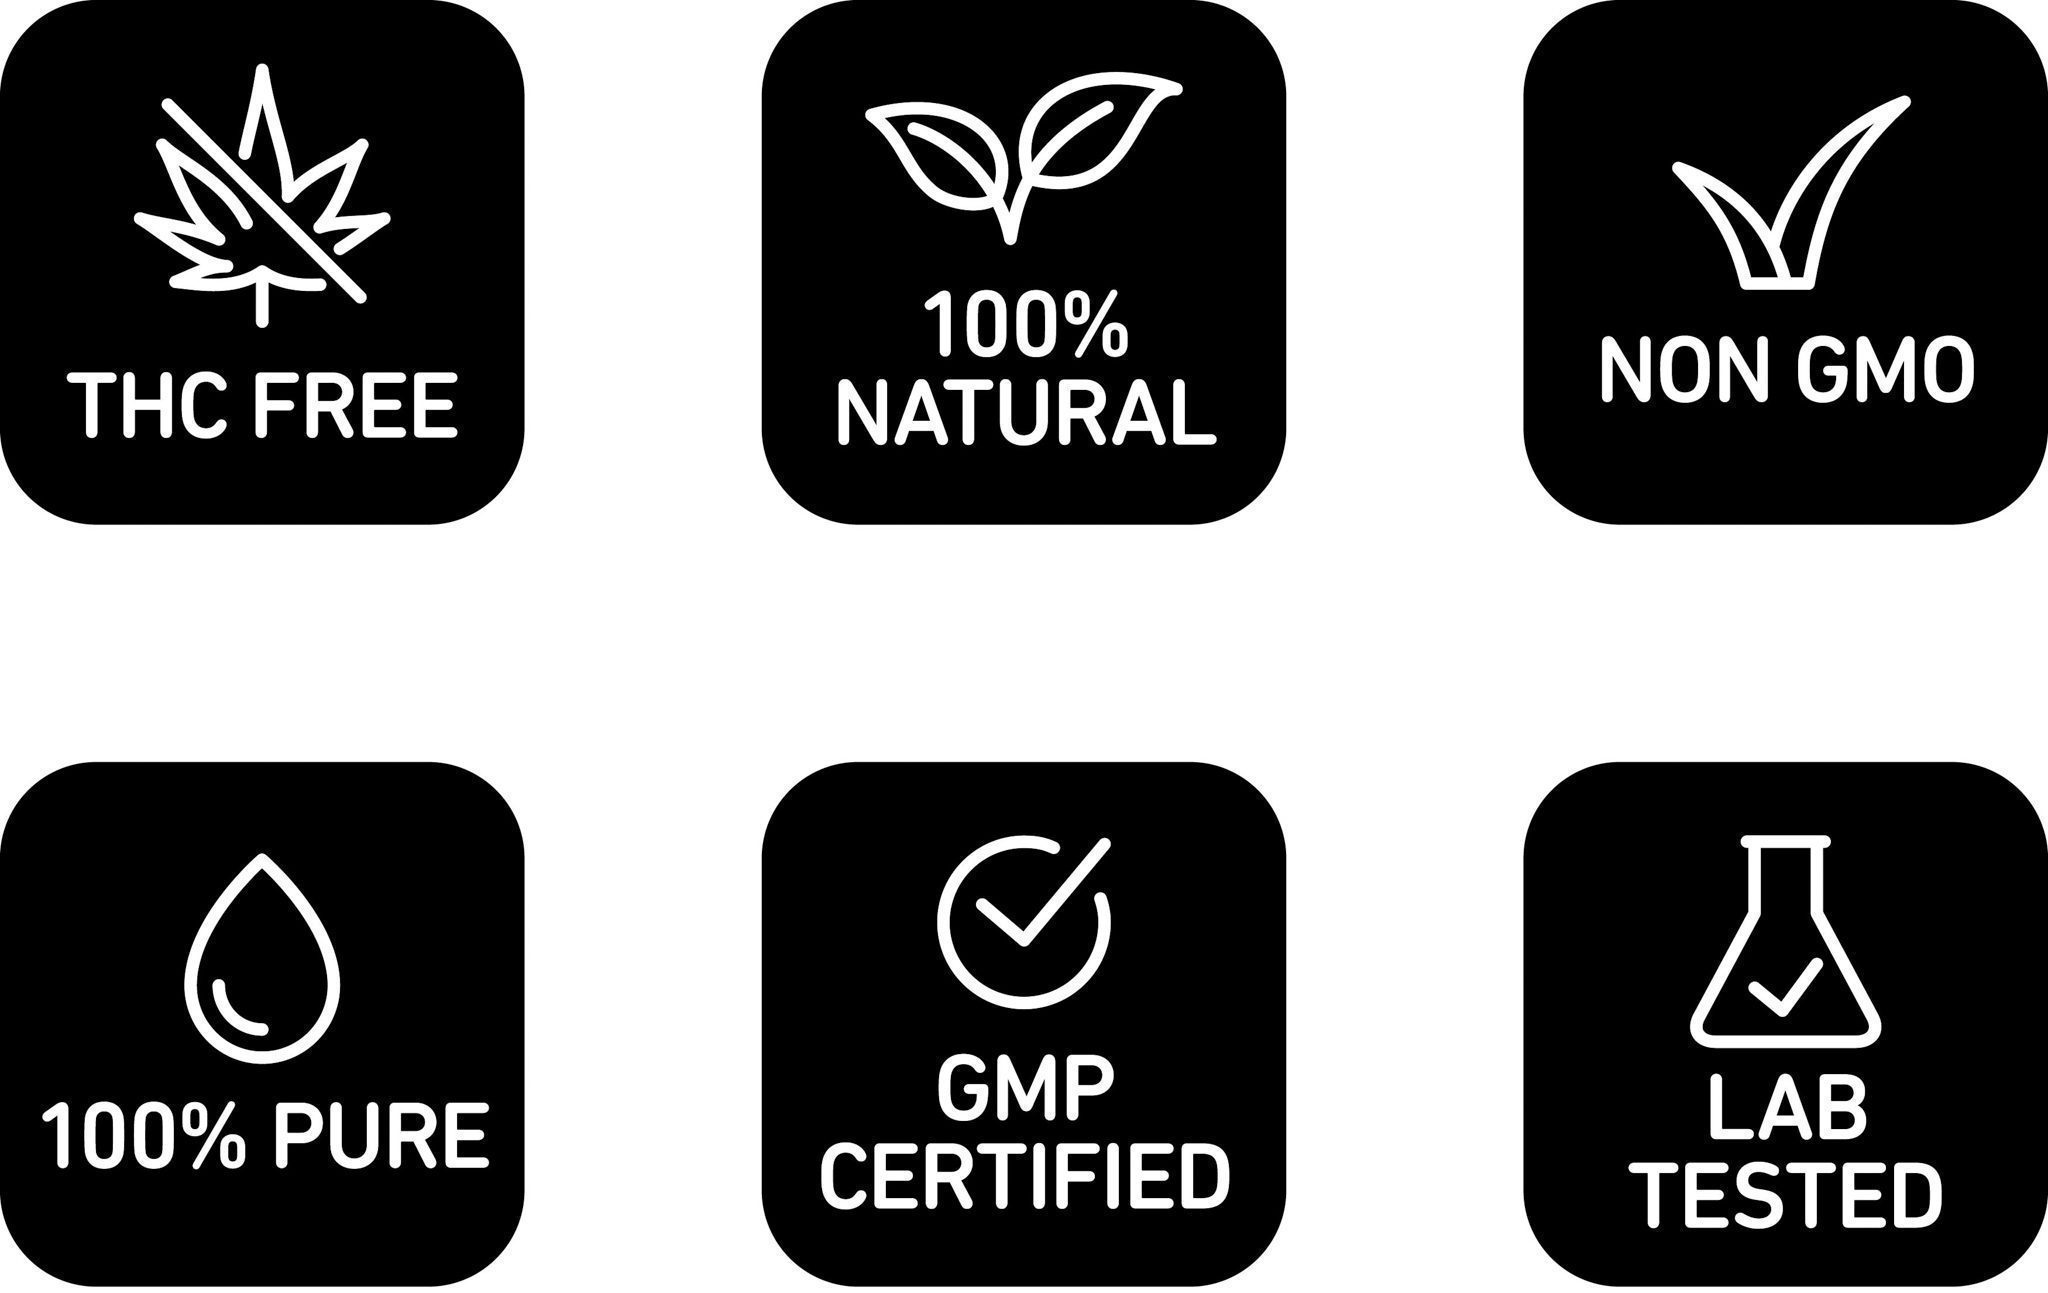 Vesl Oils THC Free, 100% Natural, Non GMO, 100% Pure, GMP Certified, Lab Test